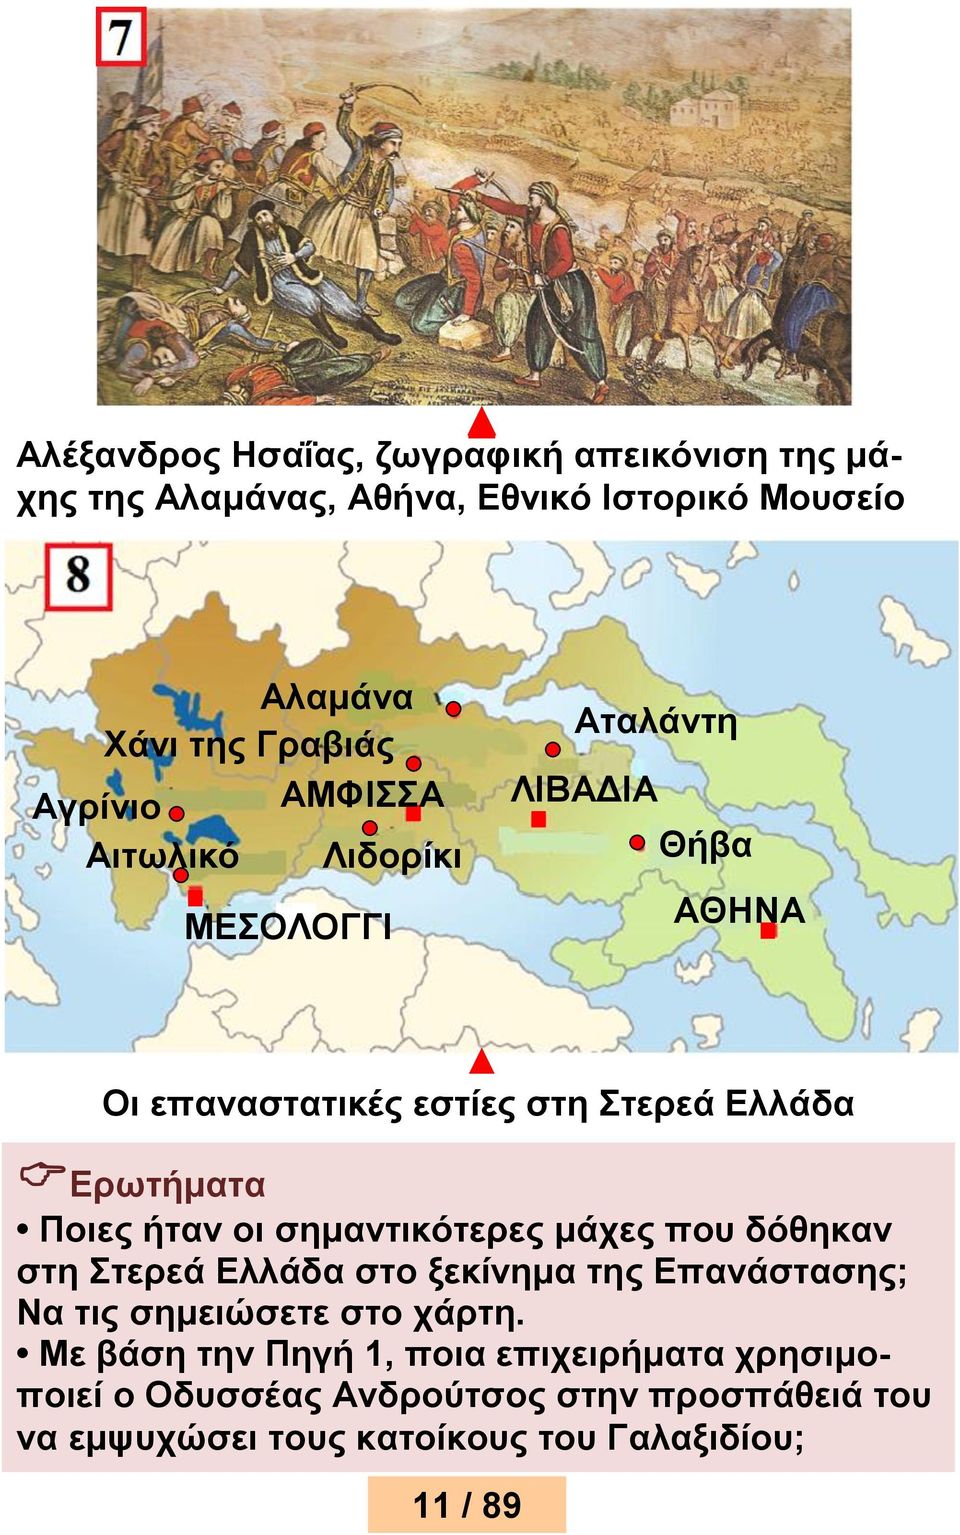 Ποιες ήταν οι σημαντικότερες μάχες που δόθηκαν στη Στερεά Ελλάδα στο ξεκίνημα της Επανάστασης; Να τις σημειώσετε στο χάρτη.